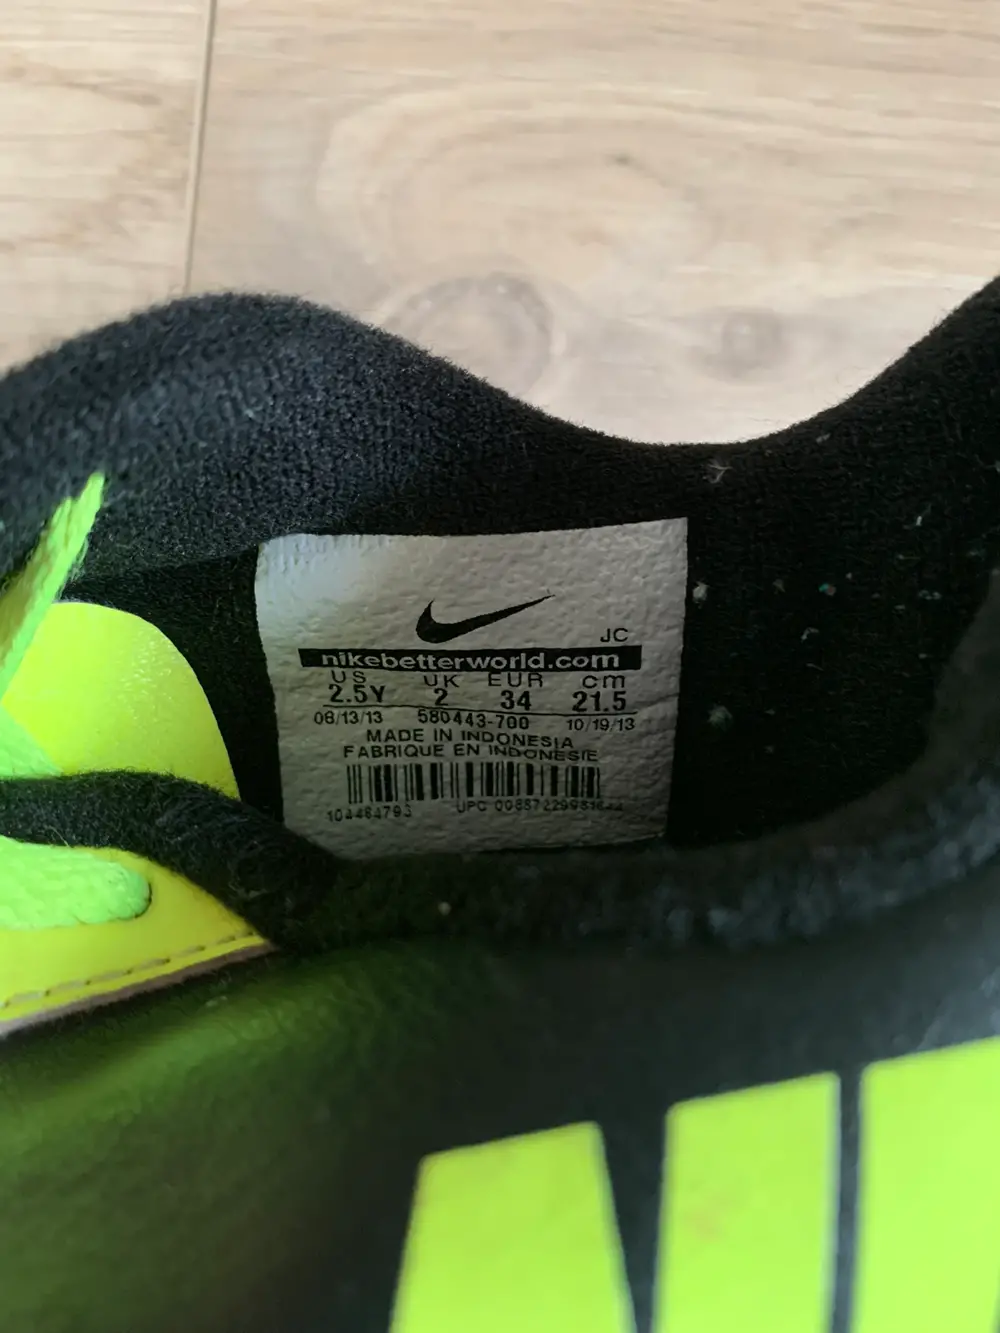 Køb Nike Indendørs fodbold i størrelse af på Reshopper · Shop secondhand til børn, mor og bolig